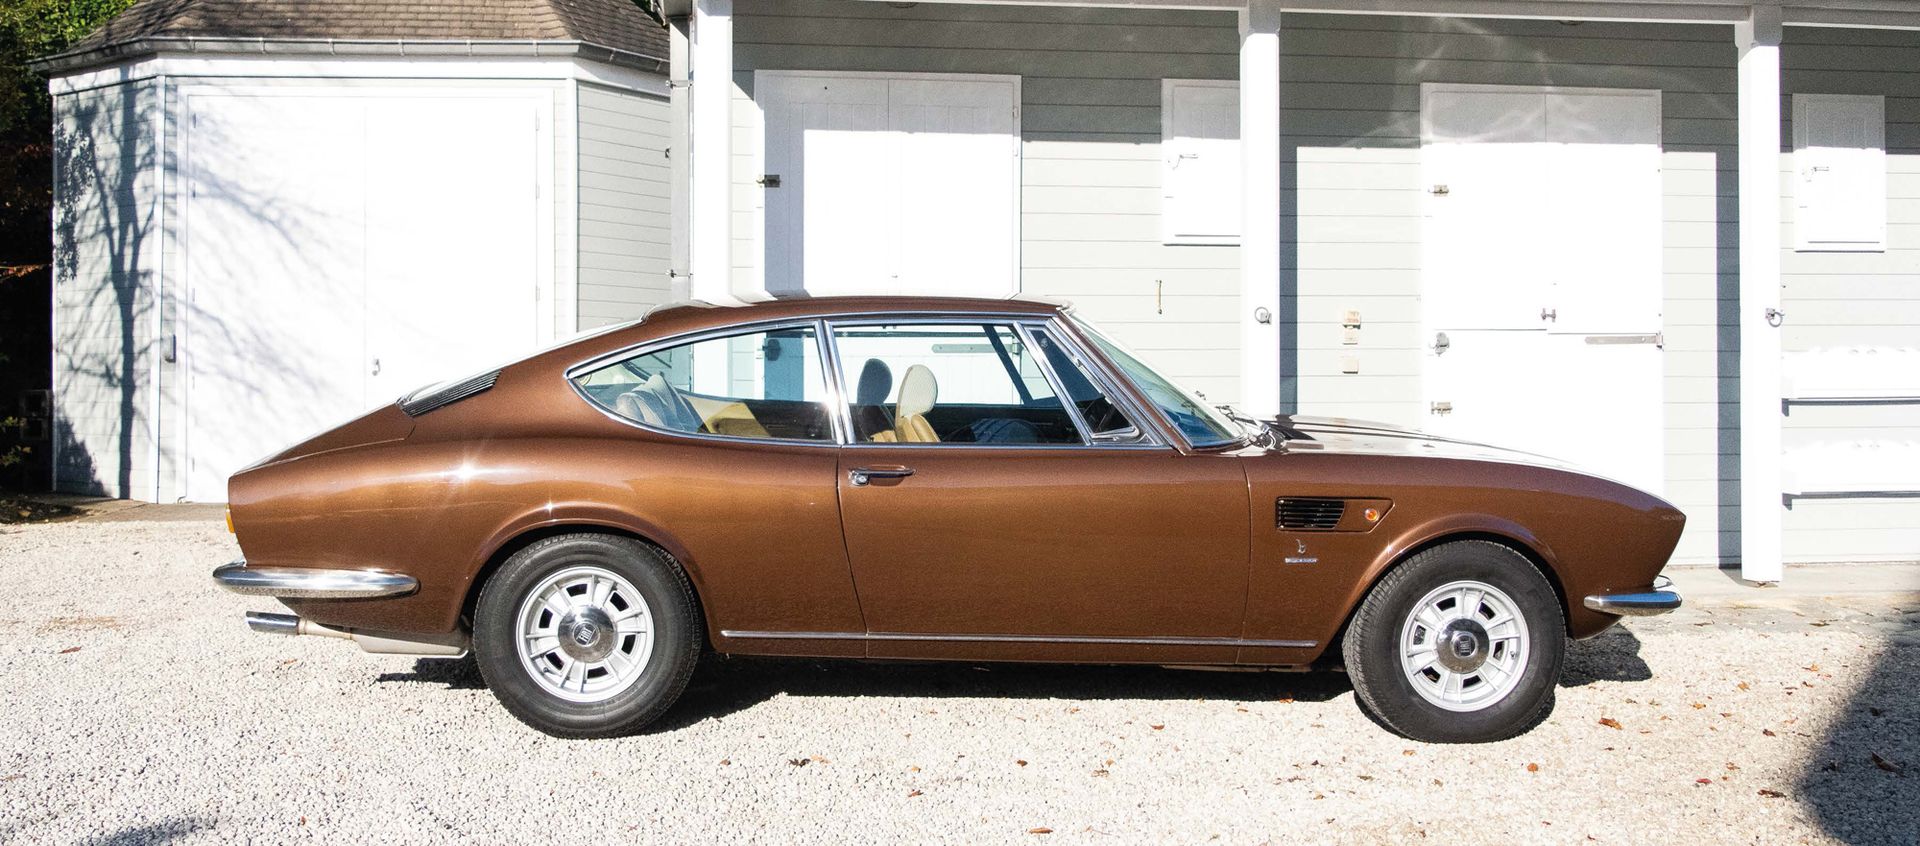 1973 FIAT Dino coupé 2400 
Los puntos de corrosión mencionados en la descripción&hellip;